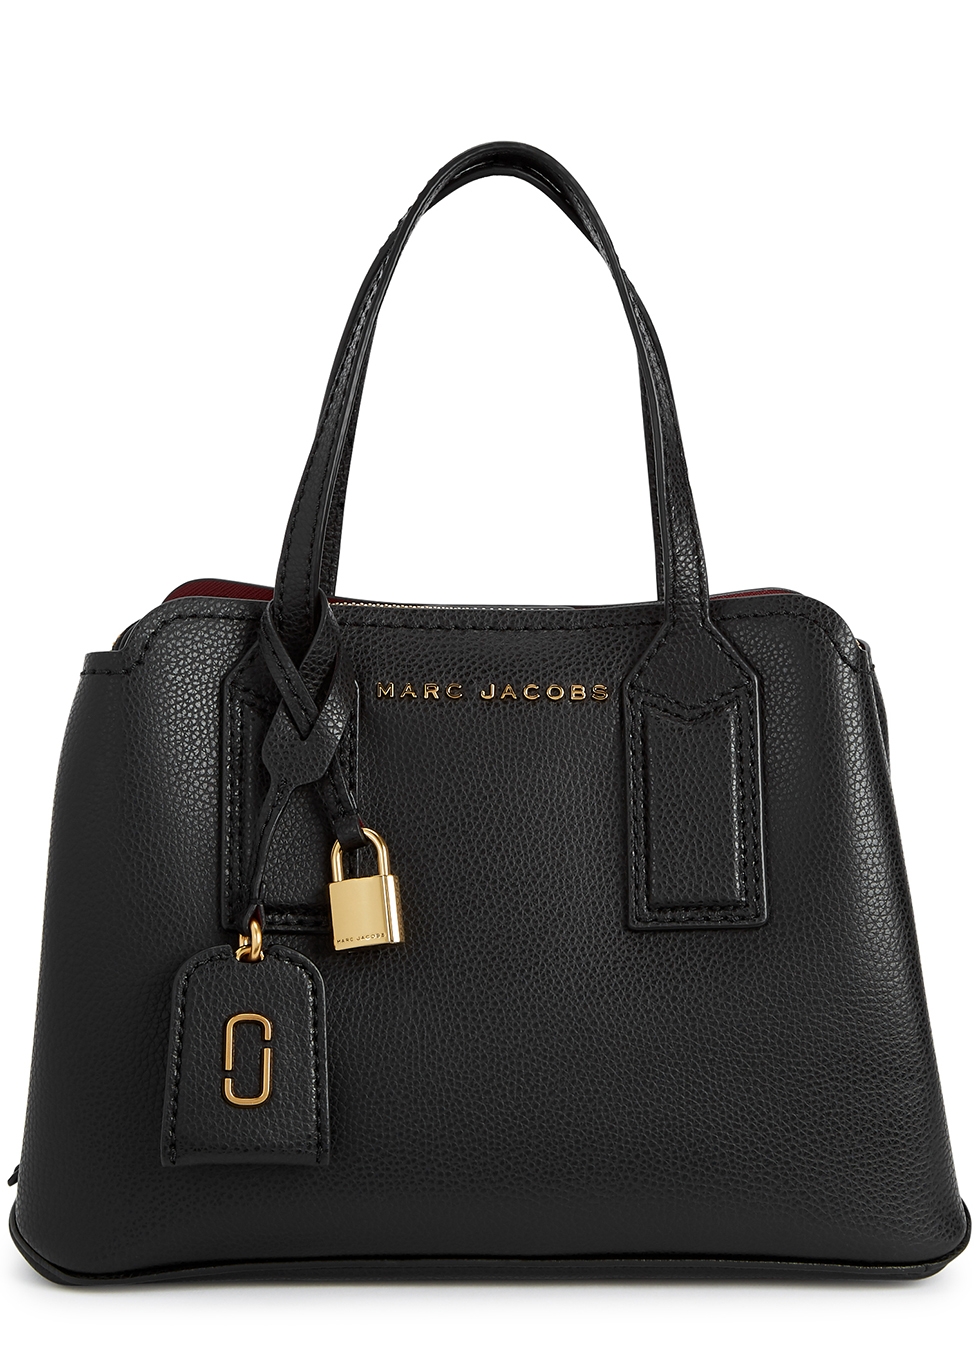 marc jacobs black leather shoulder bag